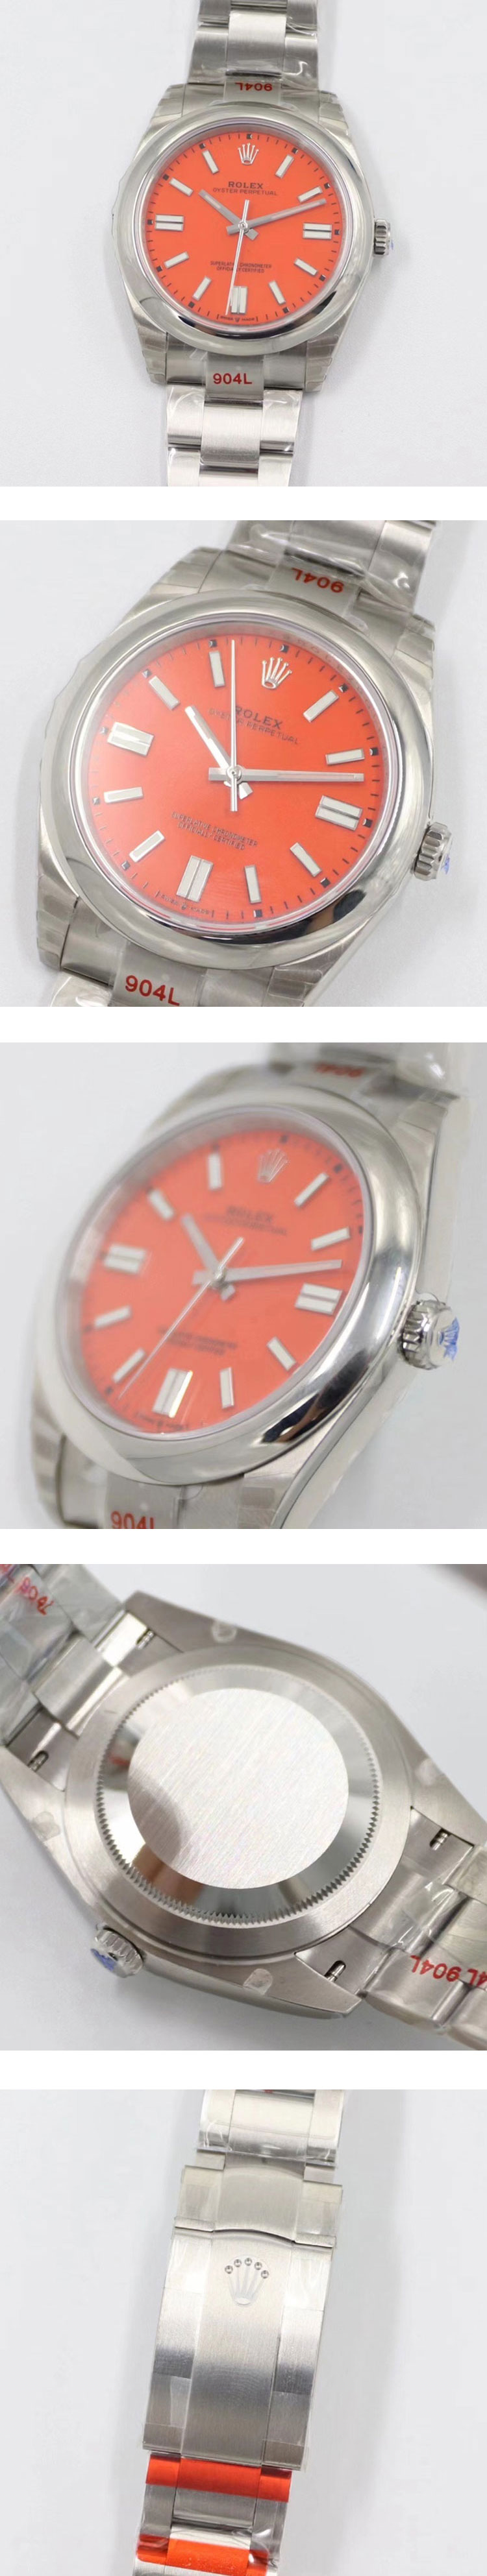 日本発売【池袋時計店舗】 ロレックスコピー時計 オイスターパーペチュアル 41 124300 コーラルレッド